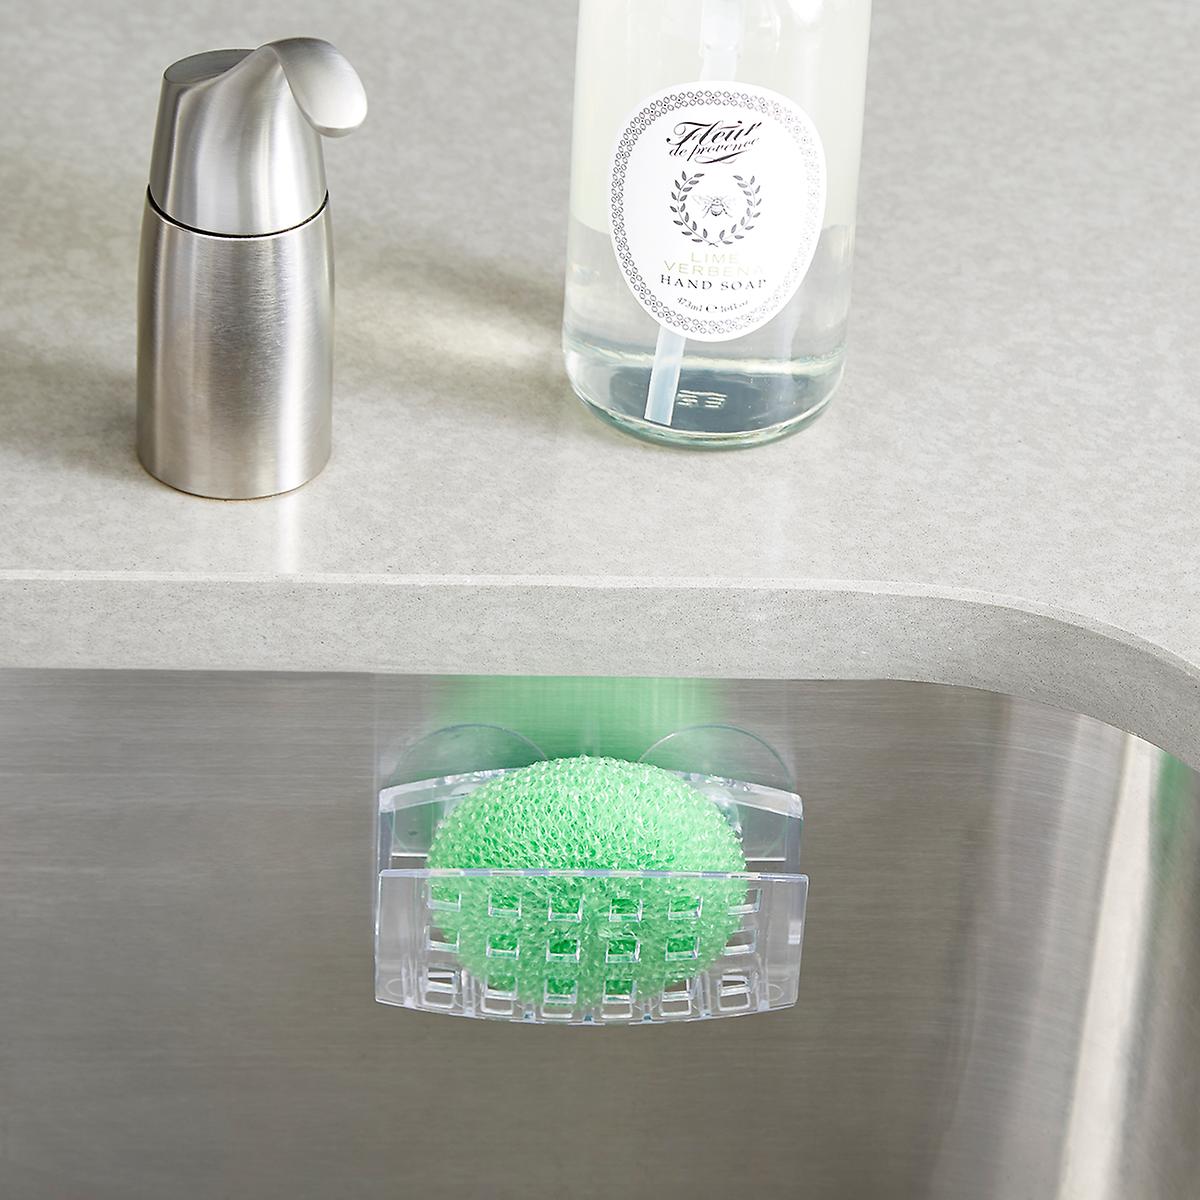 walmart kitchen sink sponge holder